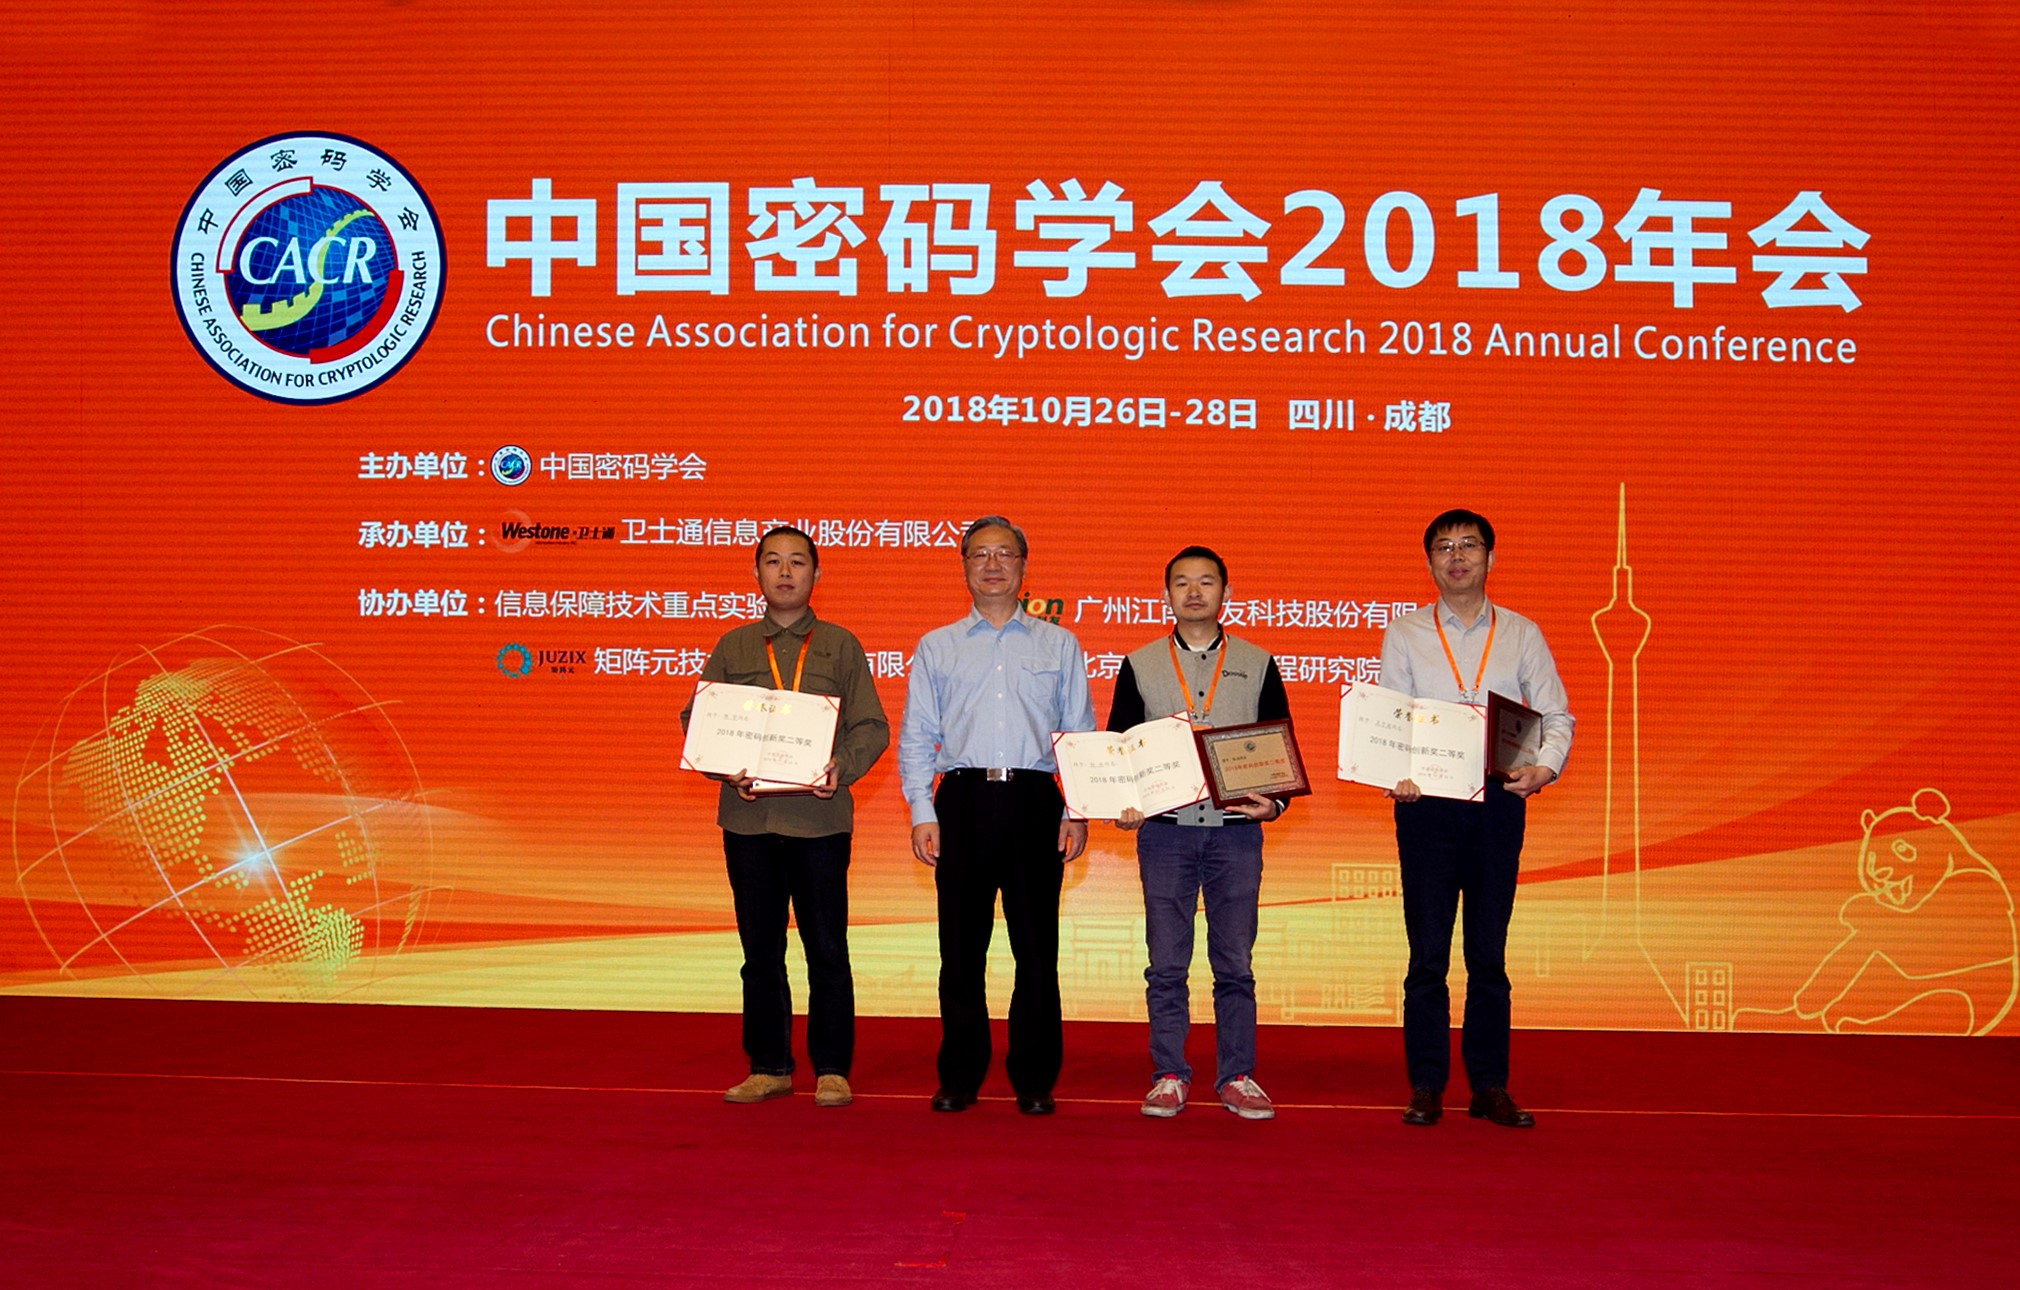 陈宇副研究员荣获2018年密码创新奖二等奖